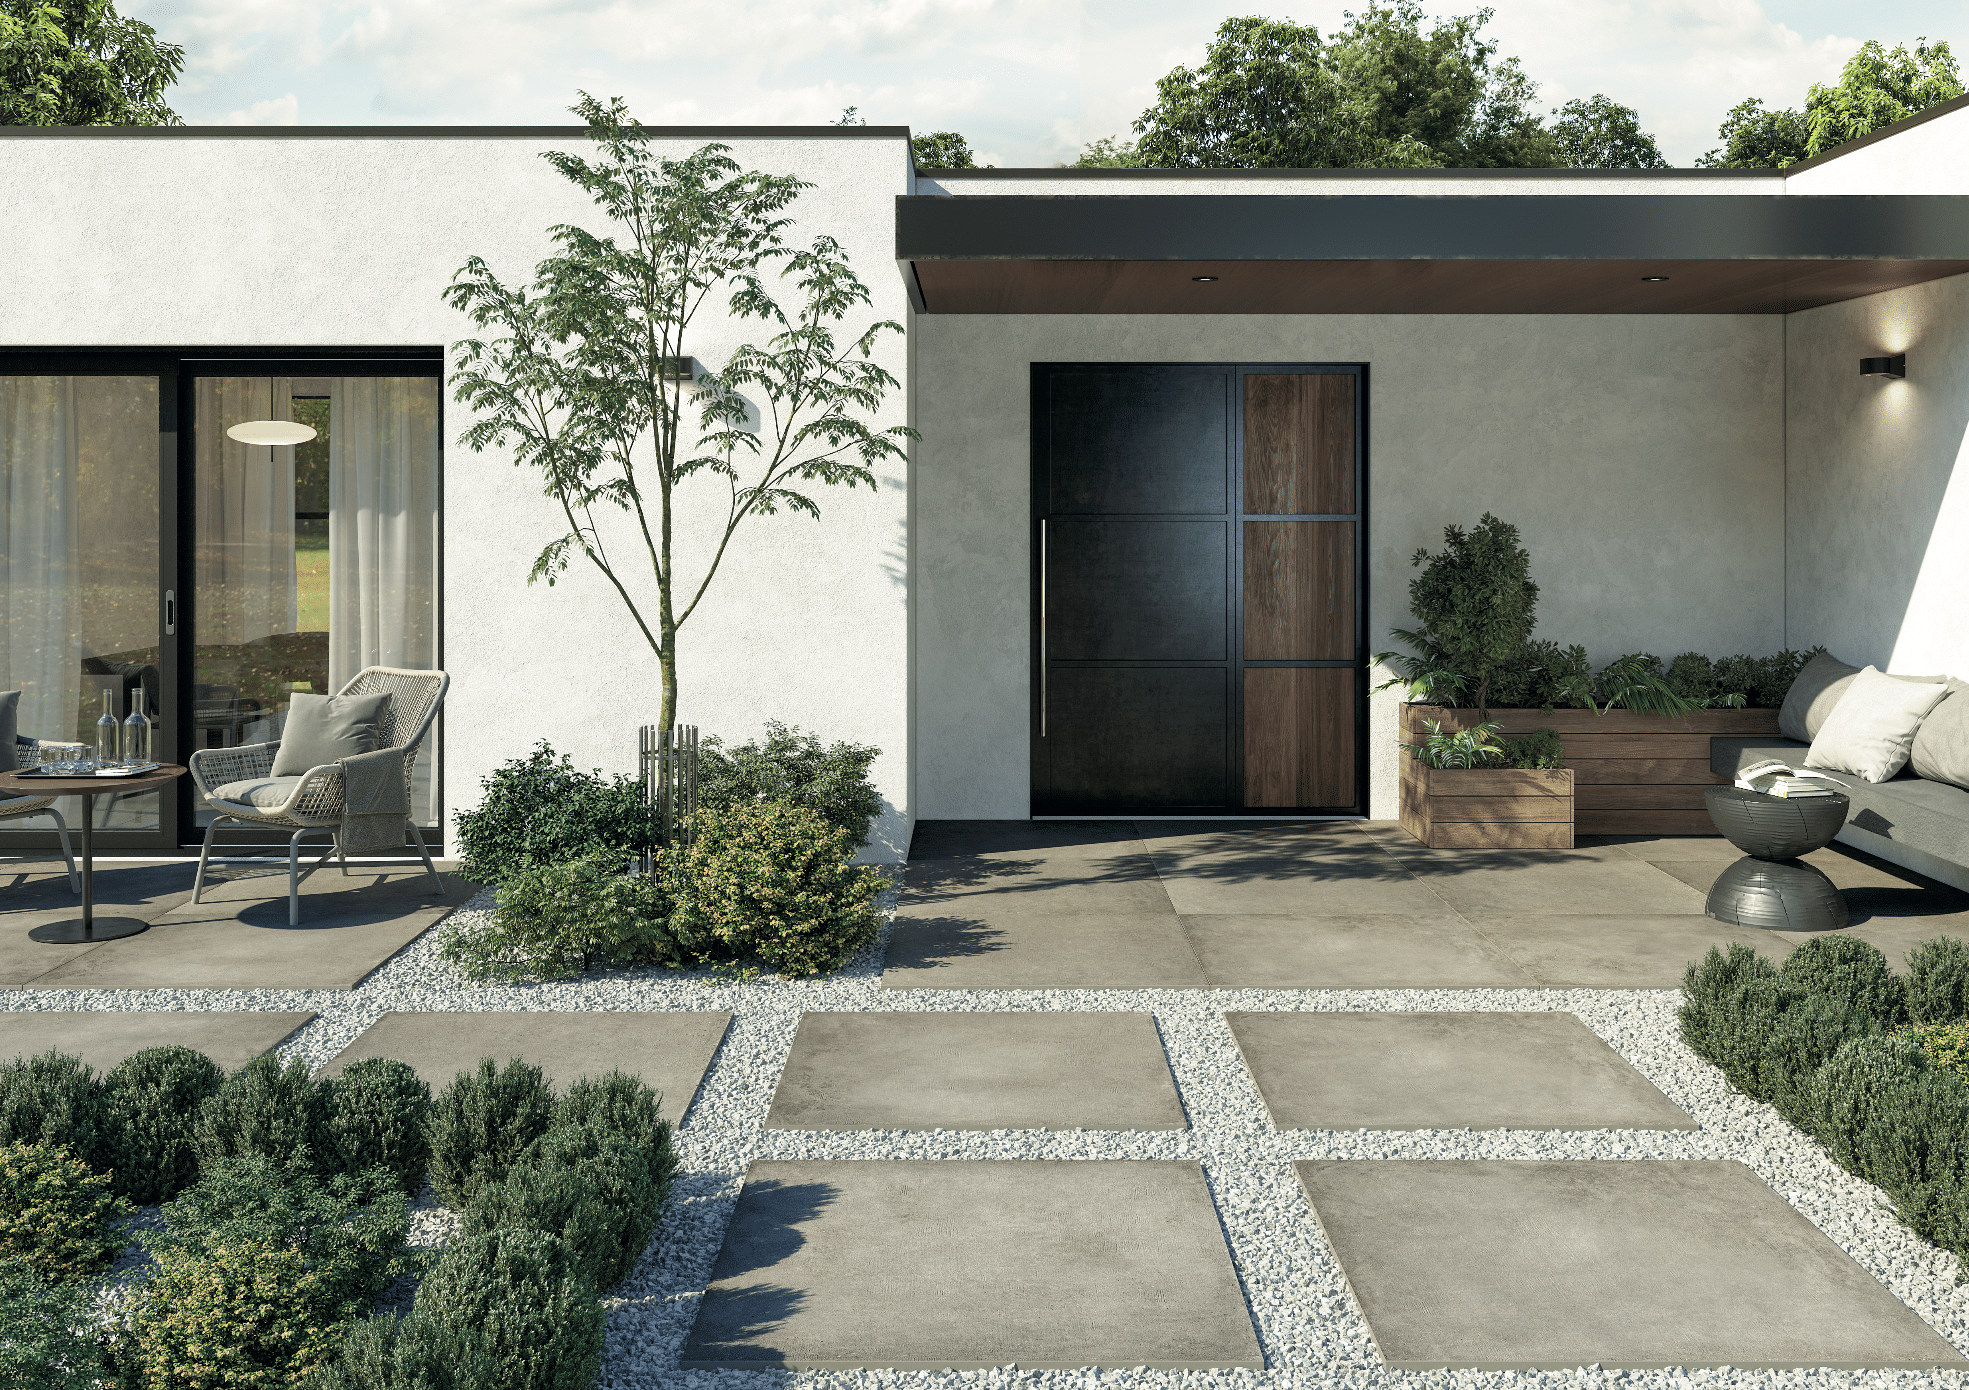 Fliesendorf zeigt den Eingangsbereich von einem modernen Haus mit Flachdach, gefliestem Boden und großen Steinplatten im Vorgarten mit Zugang zur Terrasse.